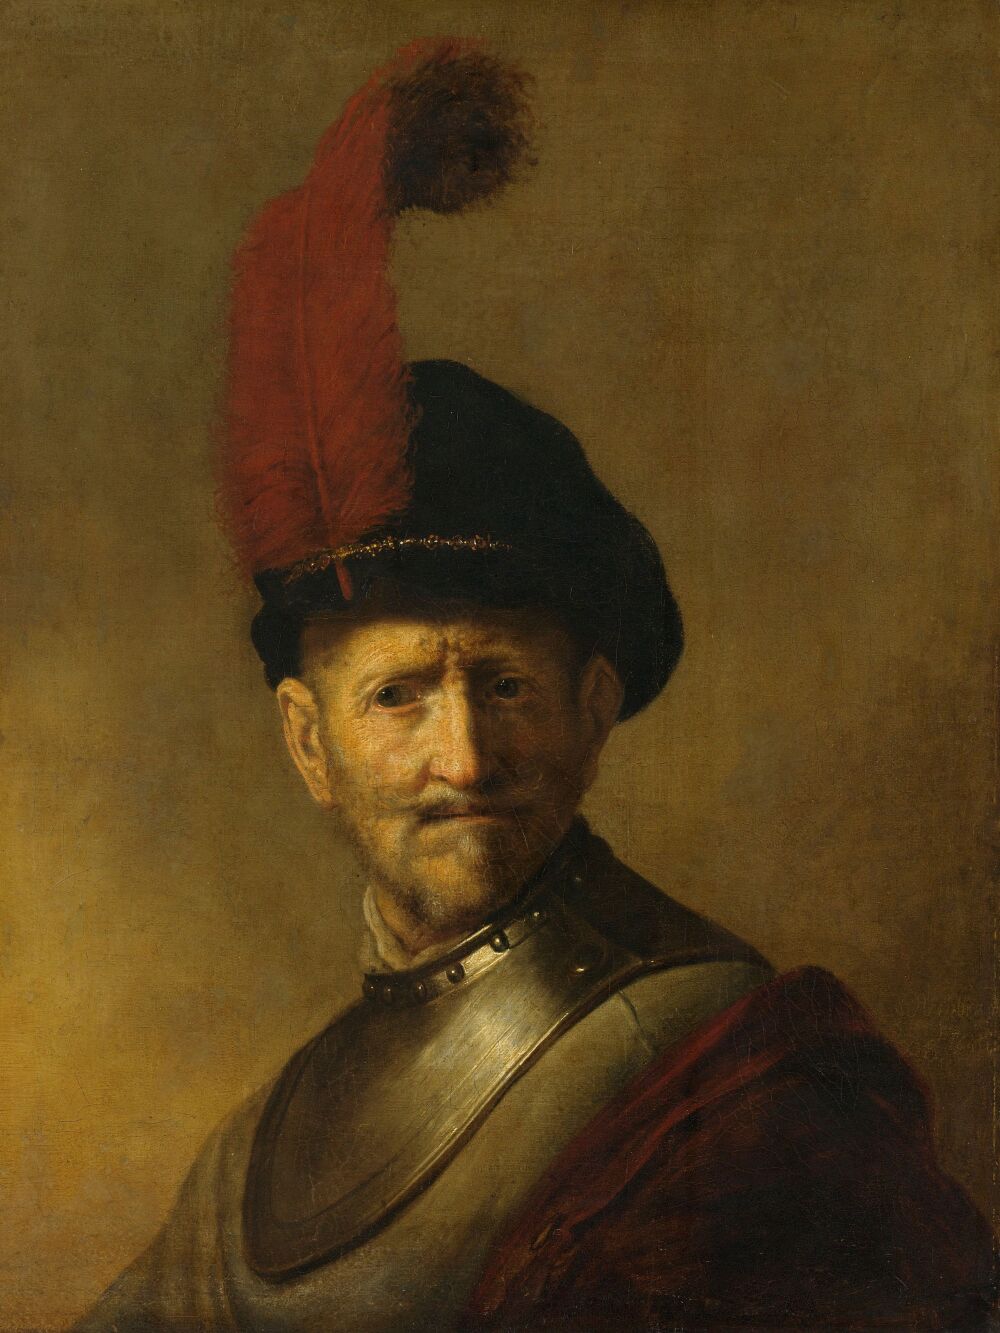 Portret van Rembrandts vader Harmen Gerritsz van Rijn van Rembrandt van Rijn - 1634